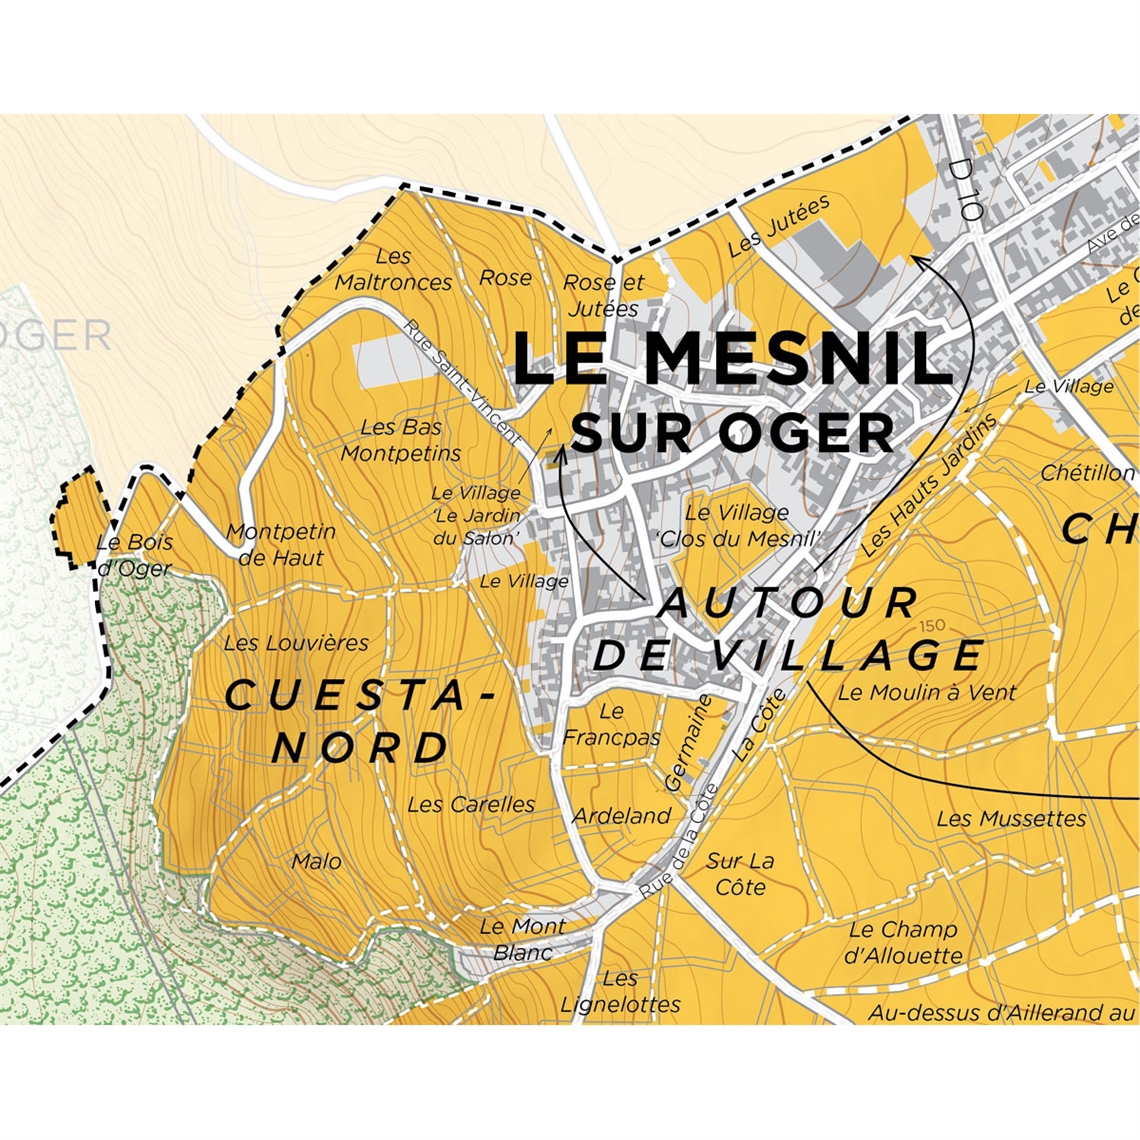 De Long’s Map of Côte des Blancs Champagne - Le Mesnil-sur-Oger Grand Cru